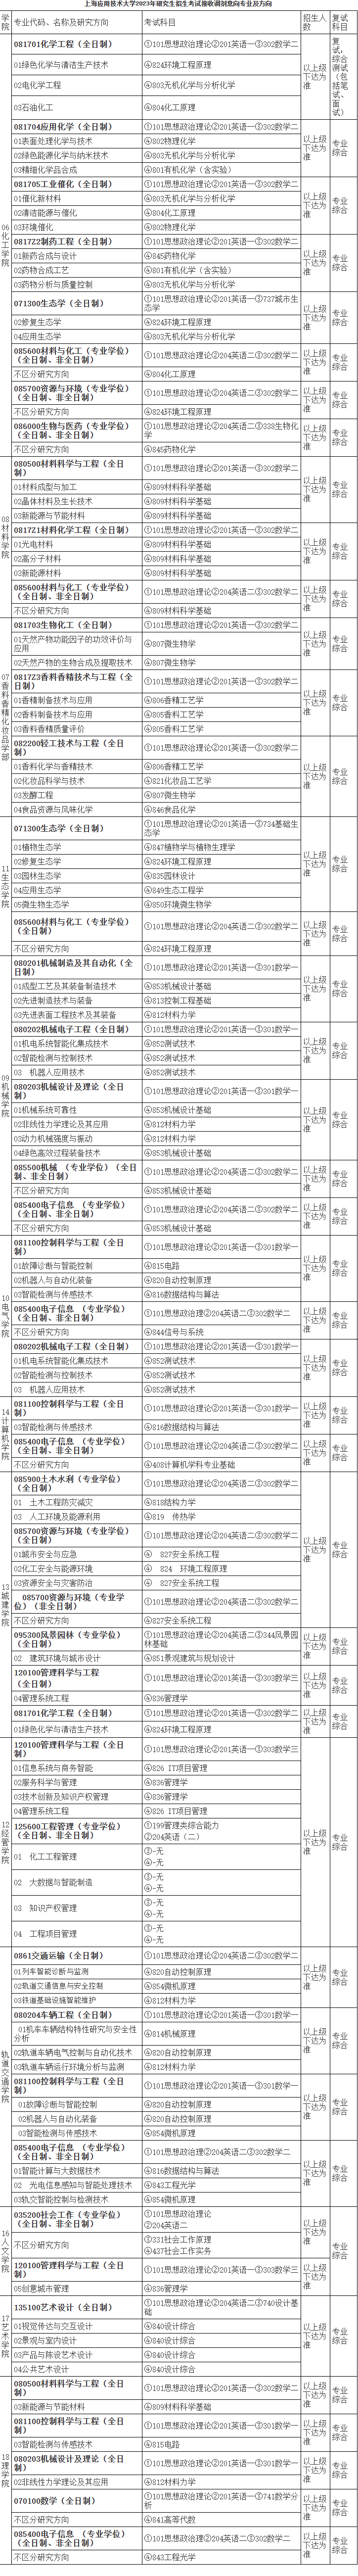 上海应用技术大学2023年硕士研究生招生考试调剂信息